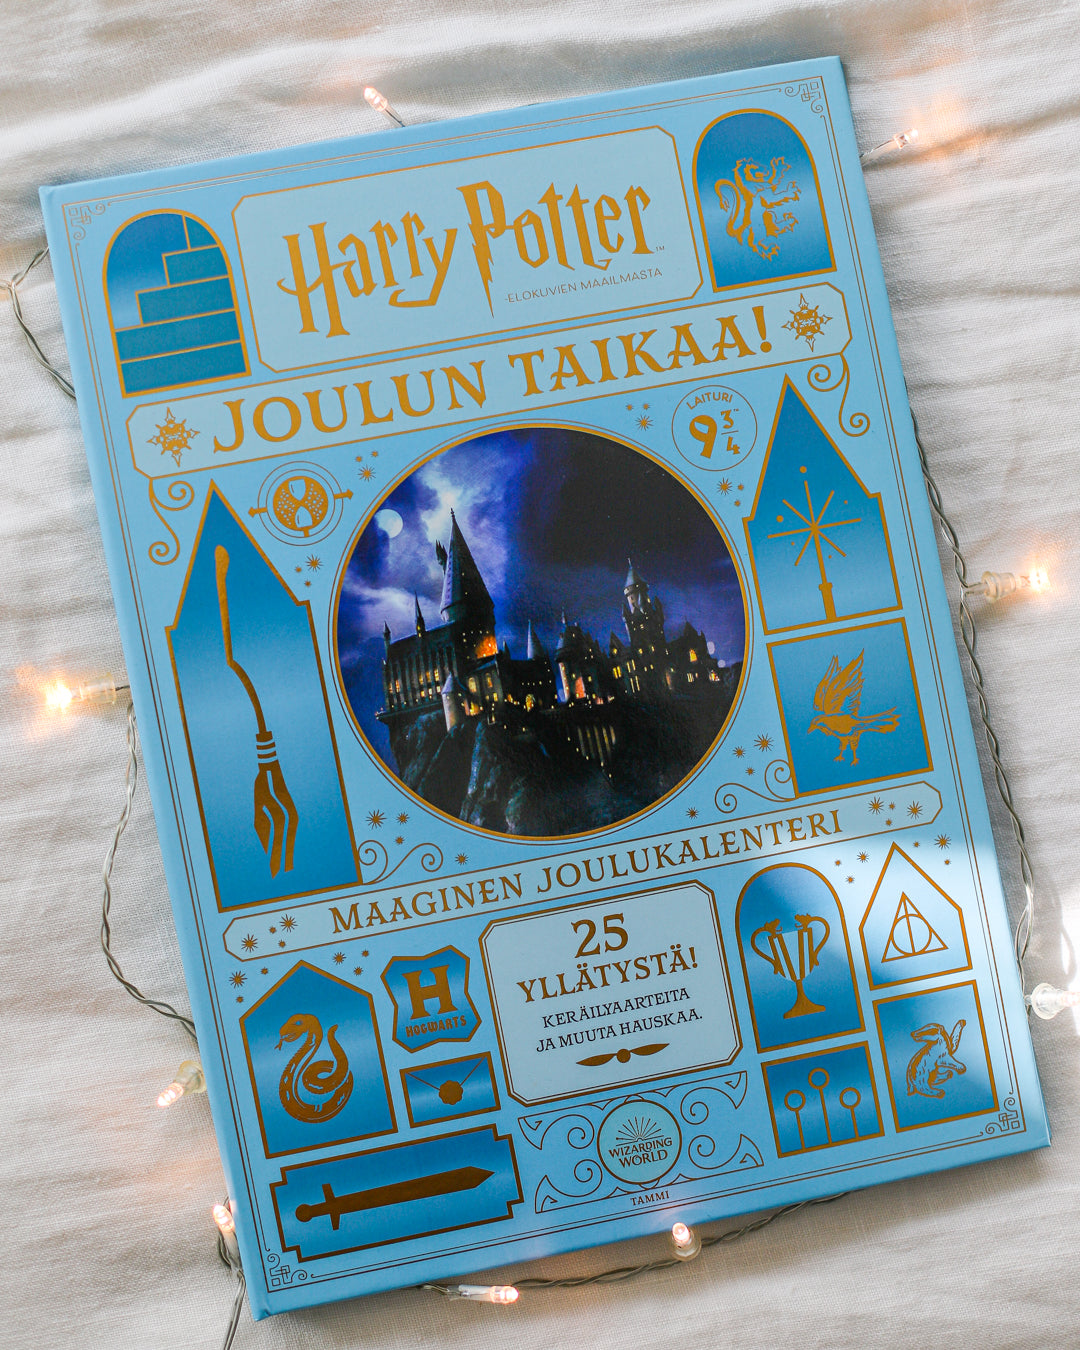 Harry Potter Maaginen joulukalenteri